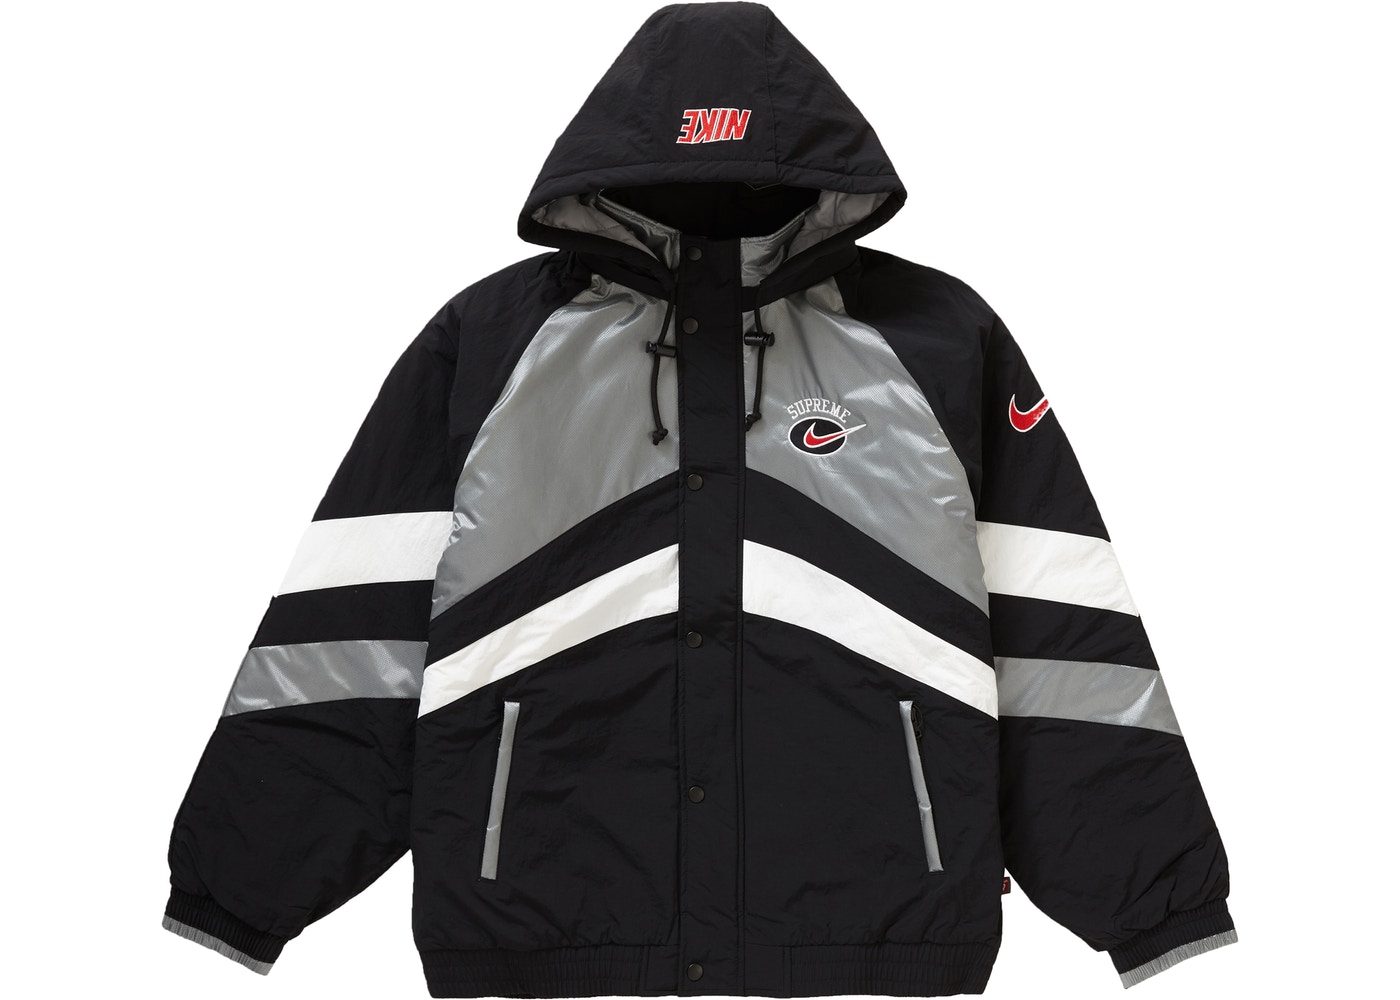 Coat clipart jacket zipper, Coat jacket zipper Transparent FREE for ...